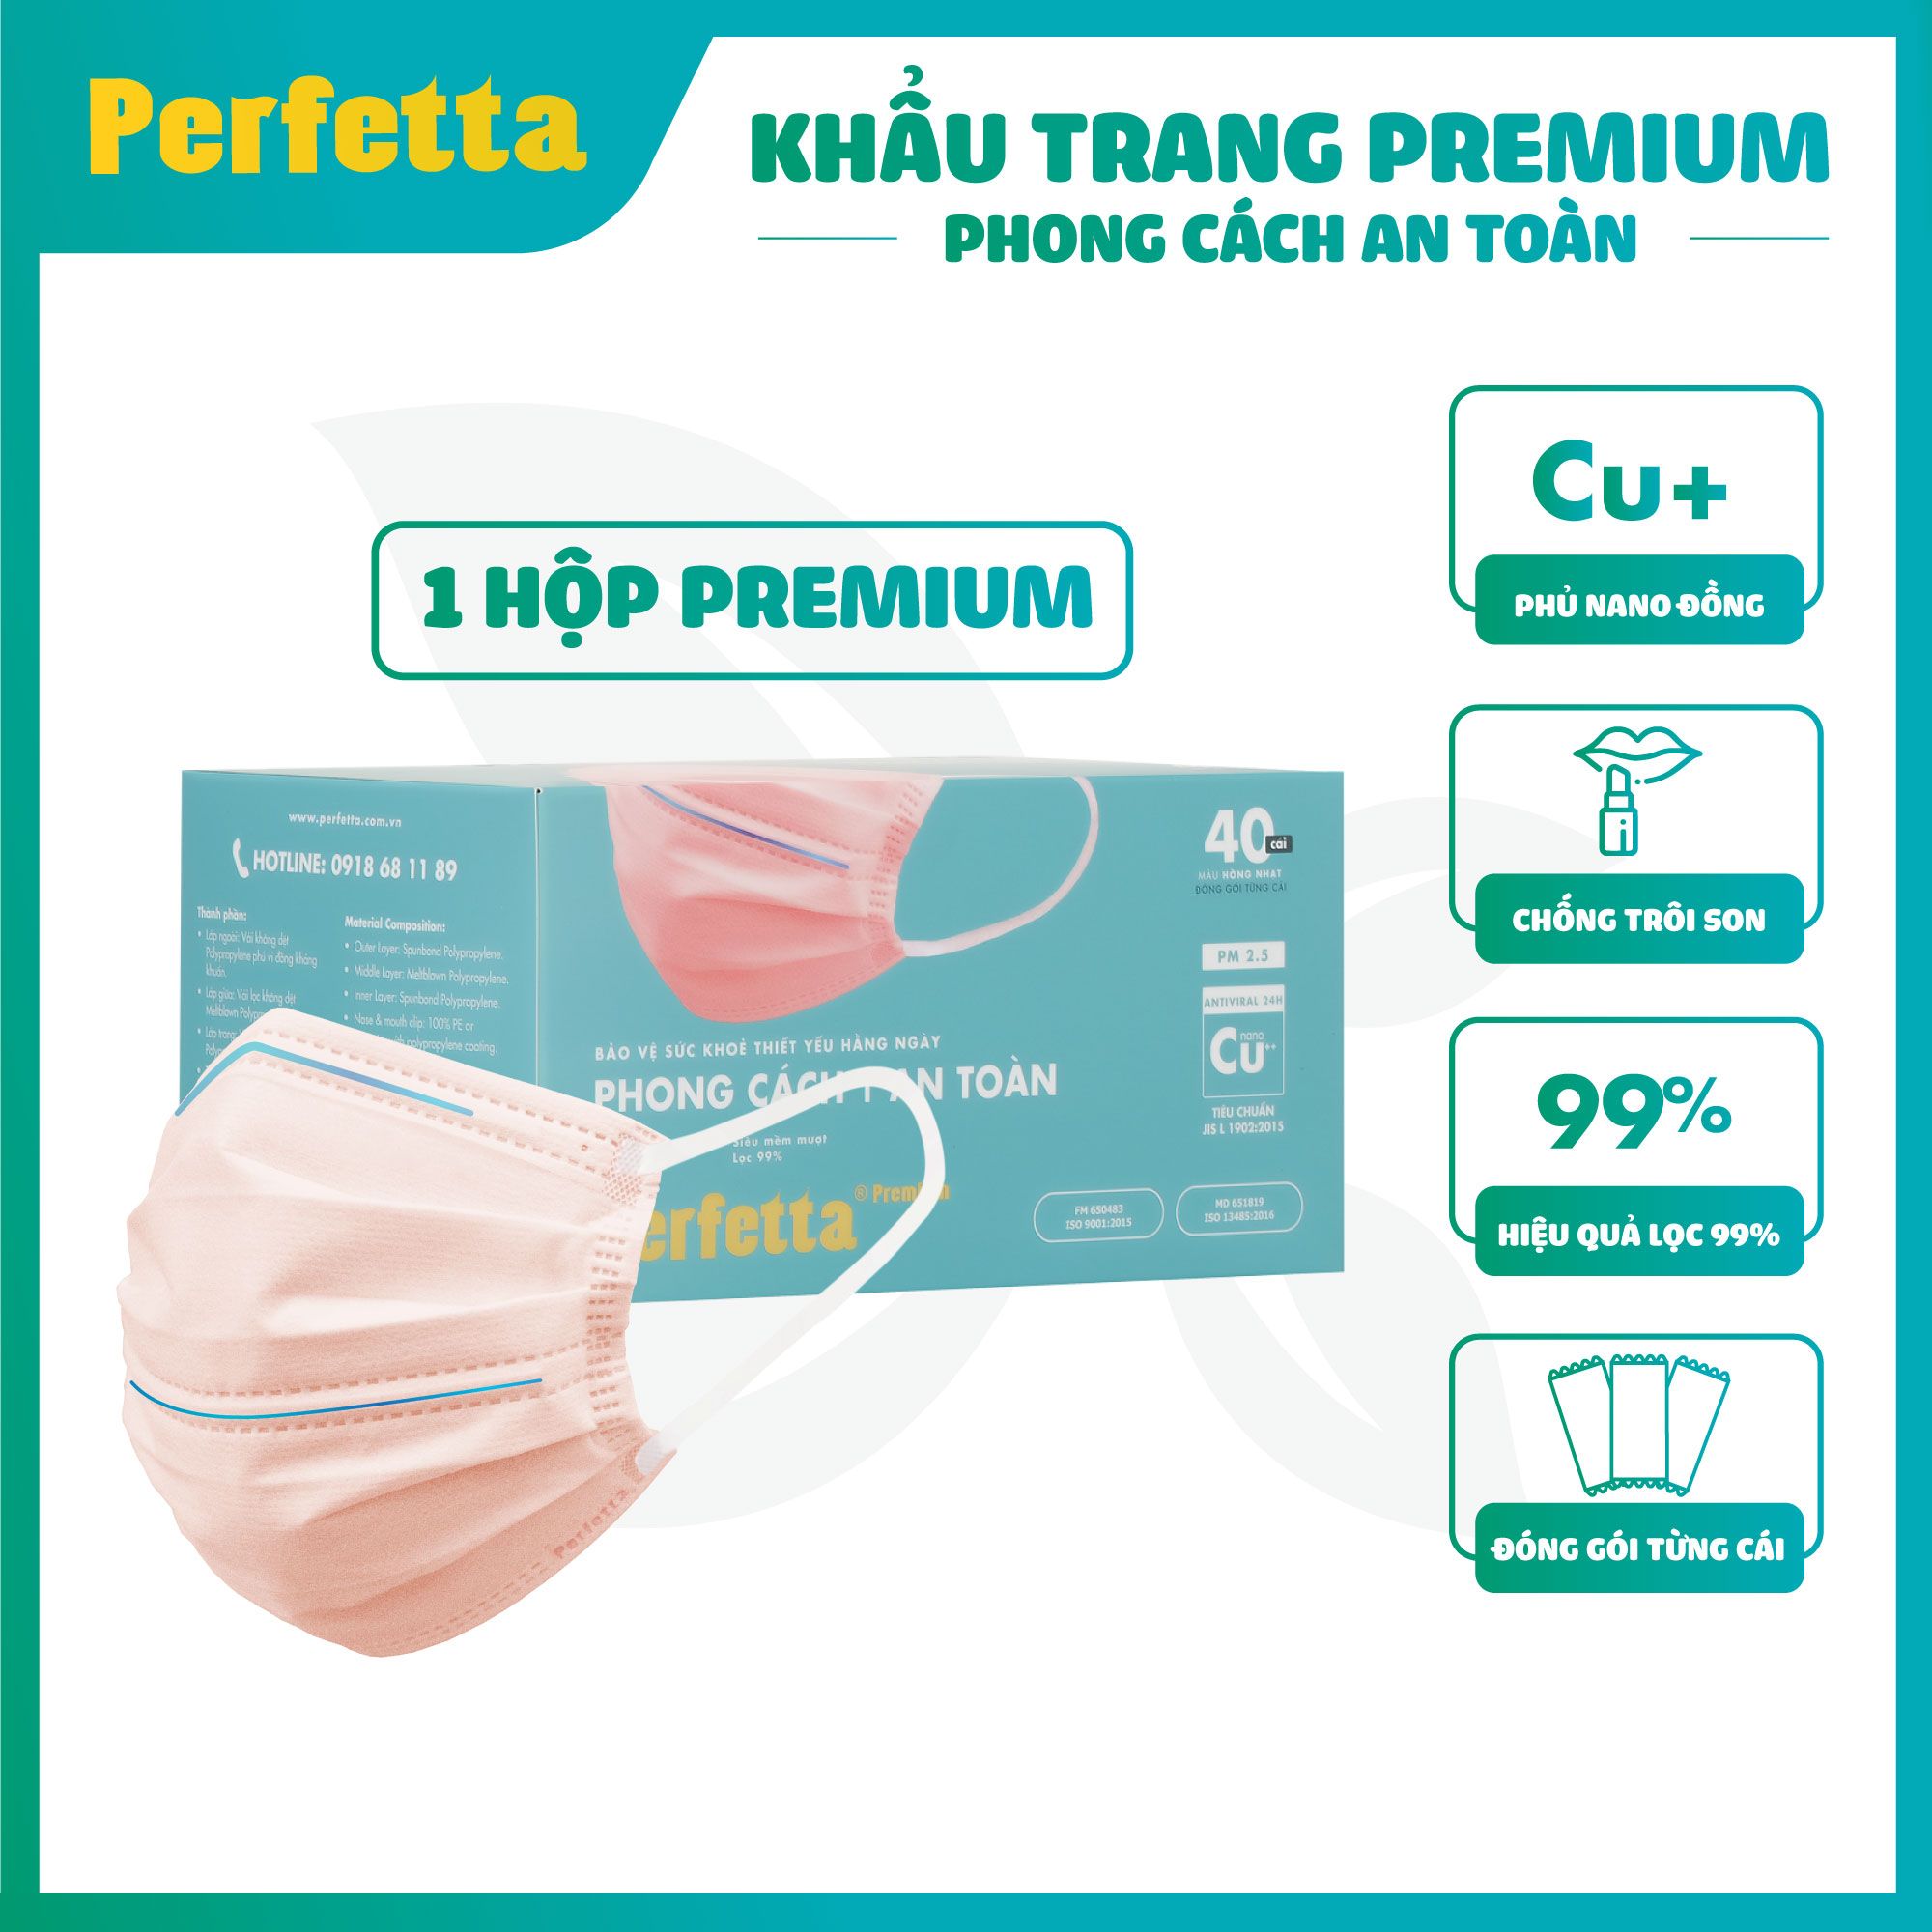  Khẩu trang y tế 3 lớp Perfetta Premium cao cấp hai thanh mũi miệng phủ Nano đồng (40 cái/hộp) 